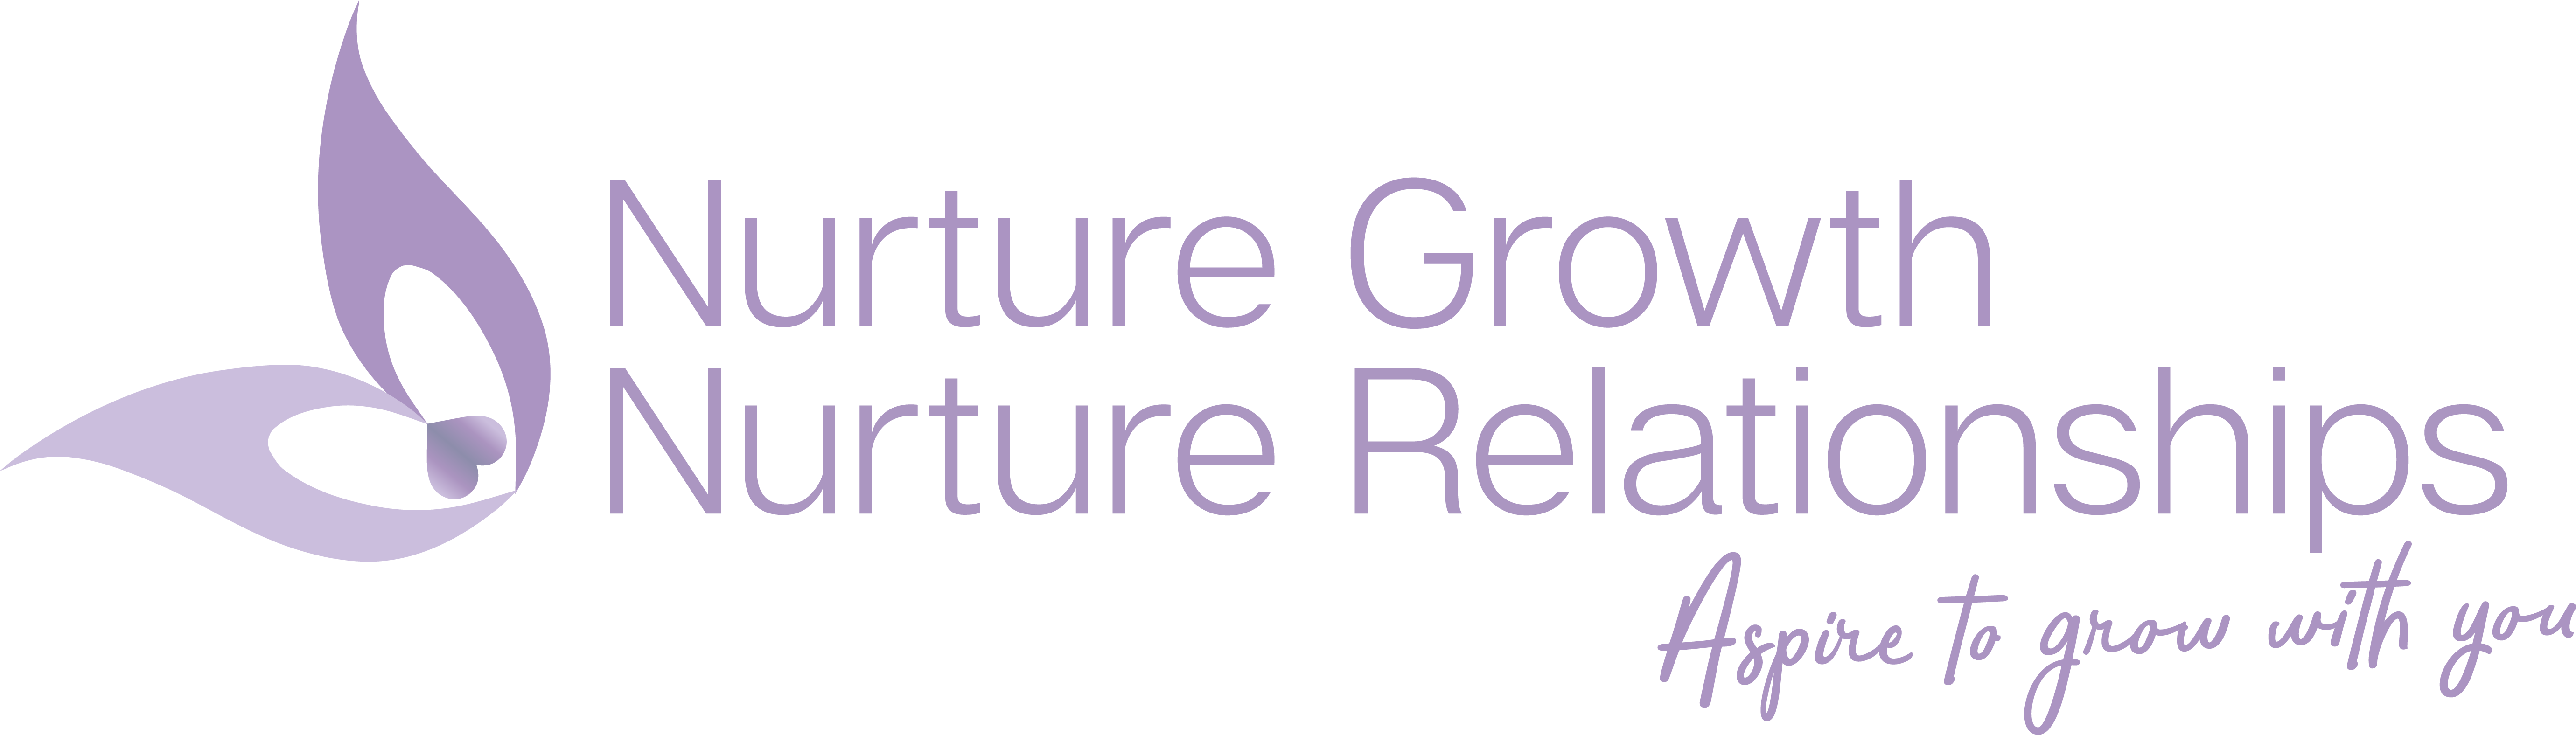 Nurture Growth Nurture Relationships logo